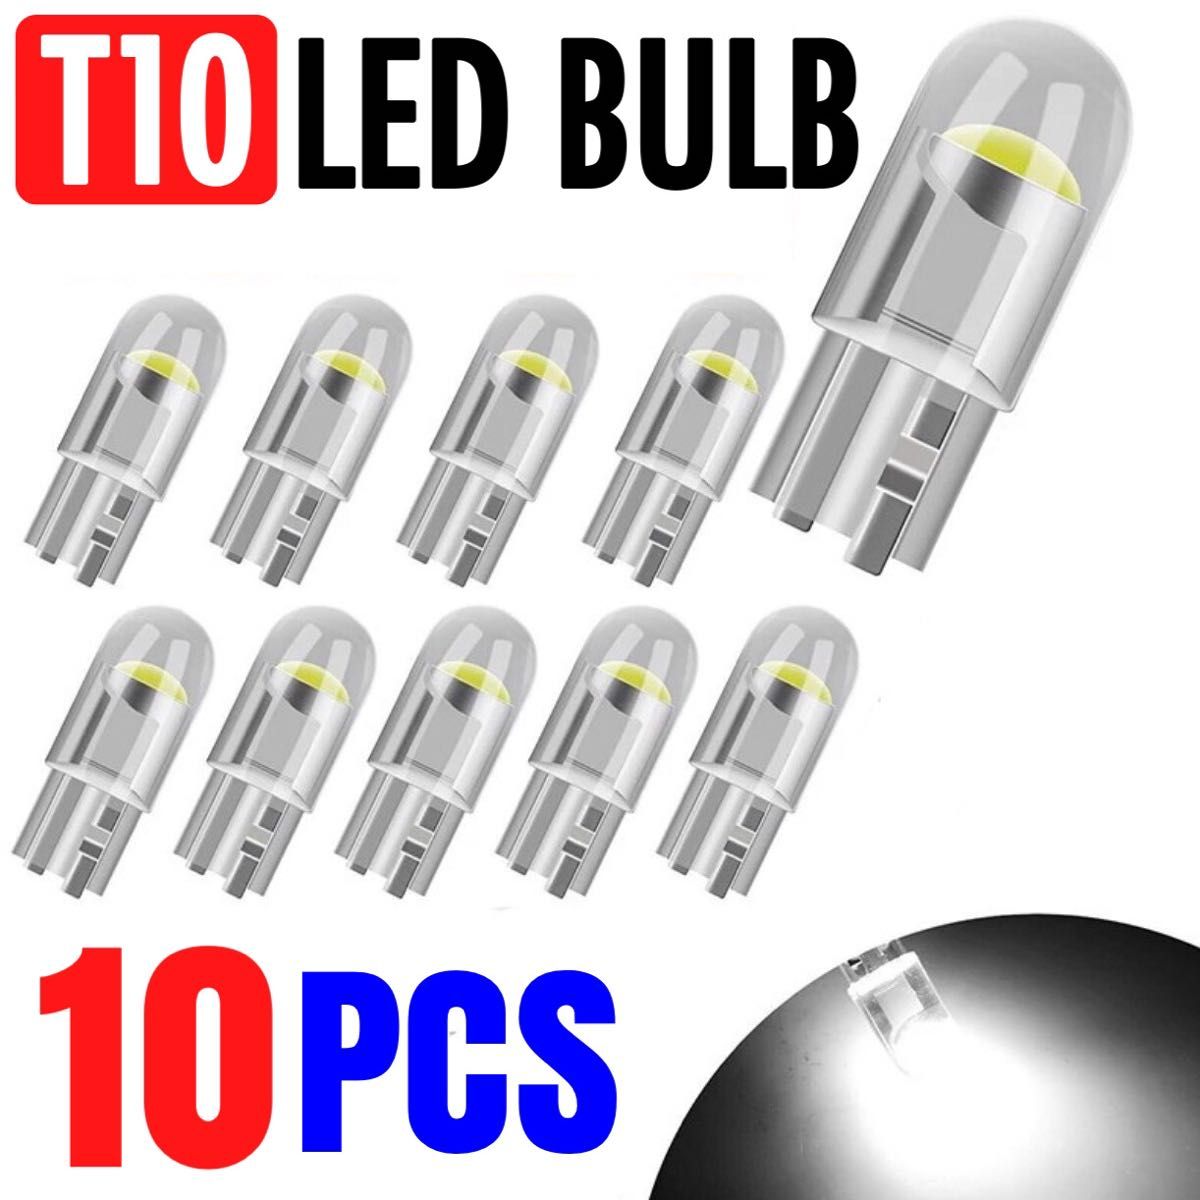 T10 T16 LED バルブ 10個 12V COB 6000K ホワイト ポジション ナンバー メーター パネル 明るい 爆光